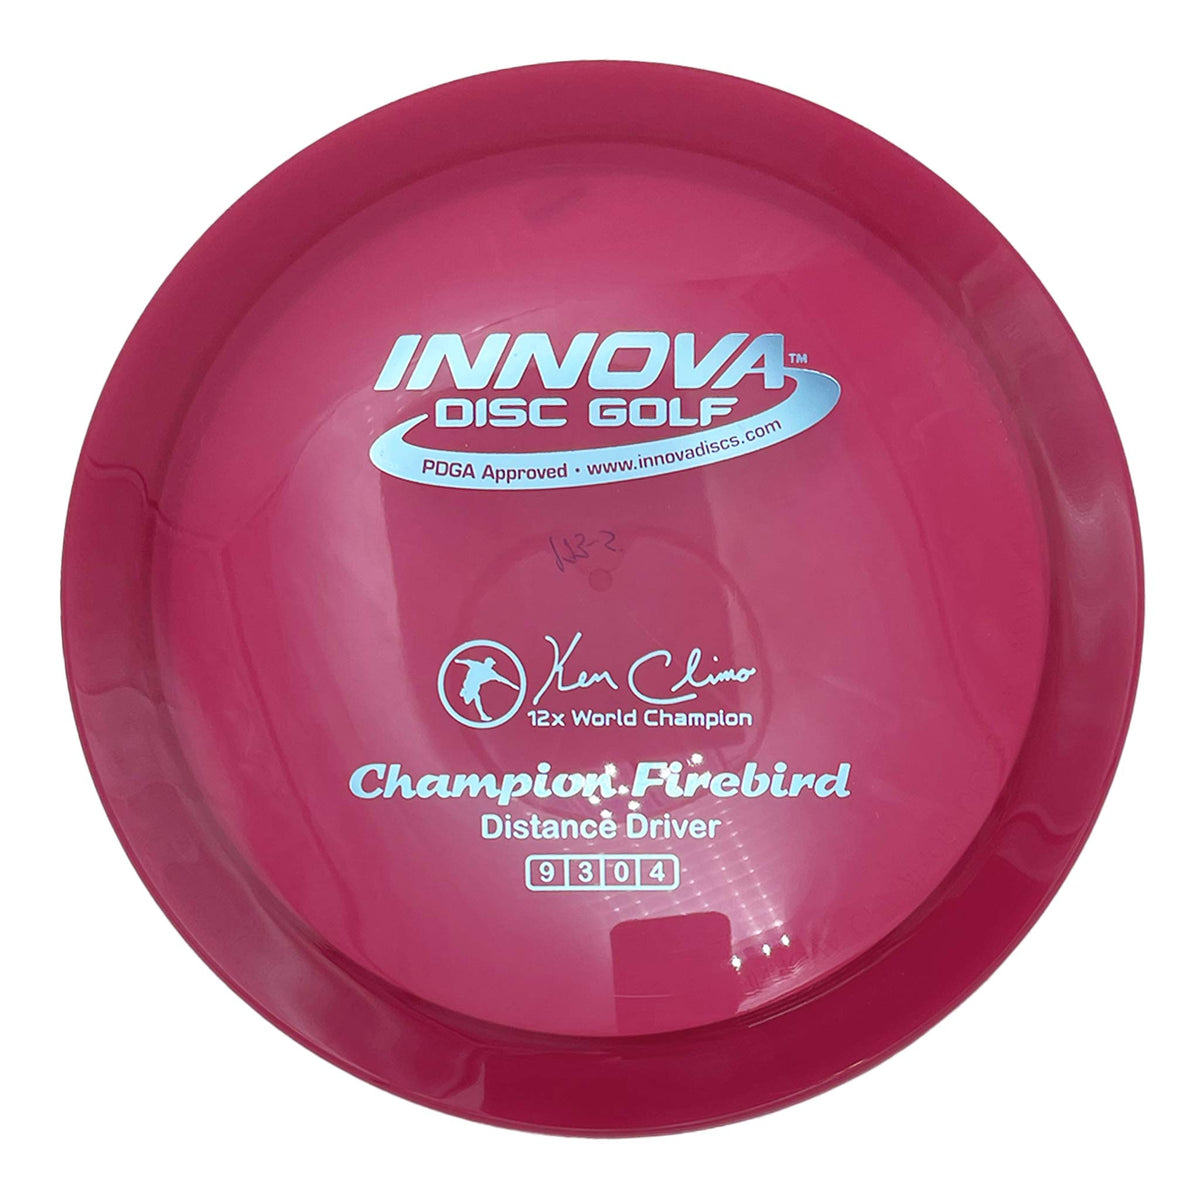 Innova Disc Golf Champion Firebird distance driver - Red